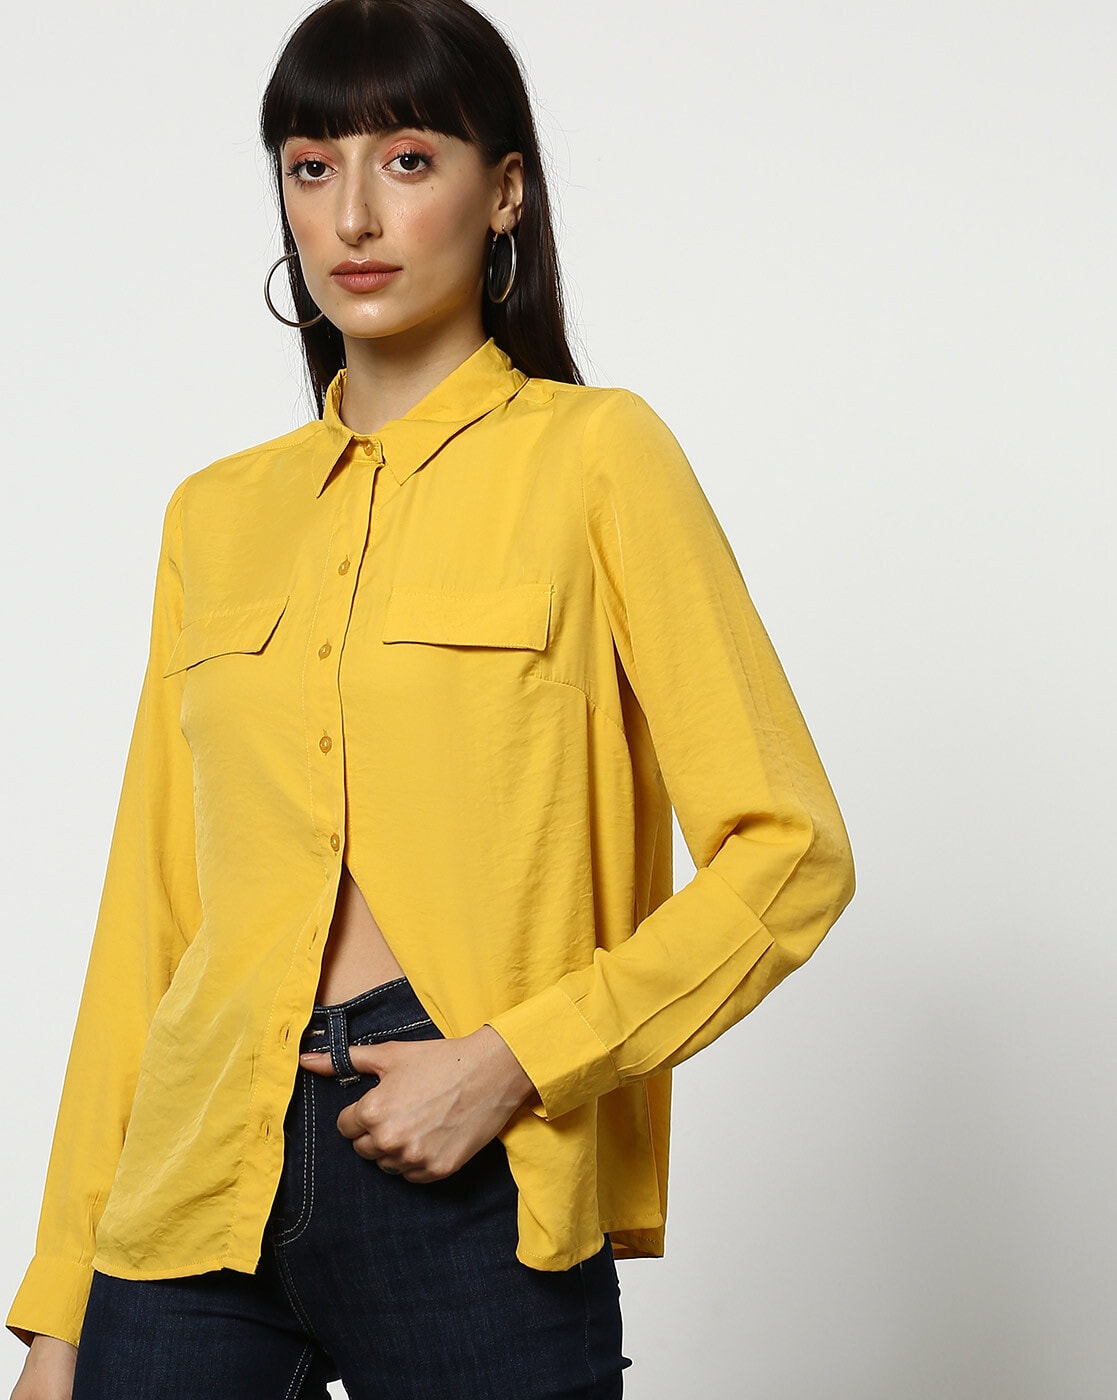 yellow shirt for women